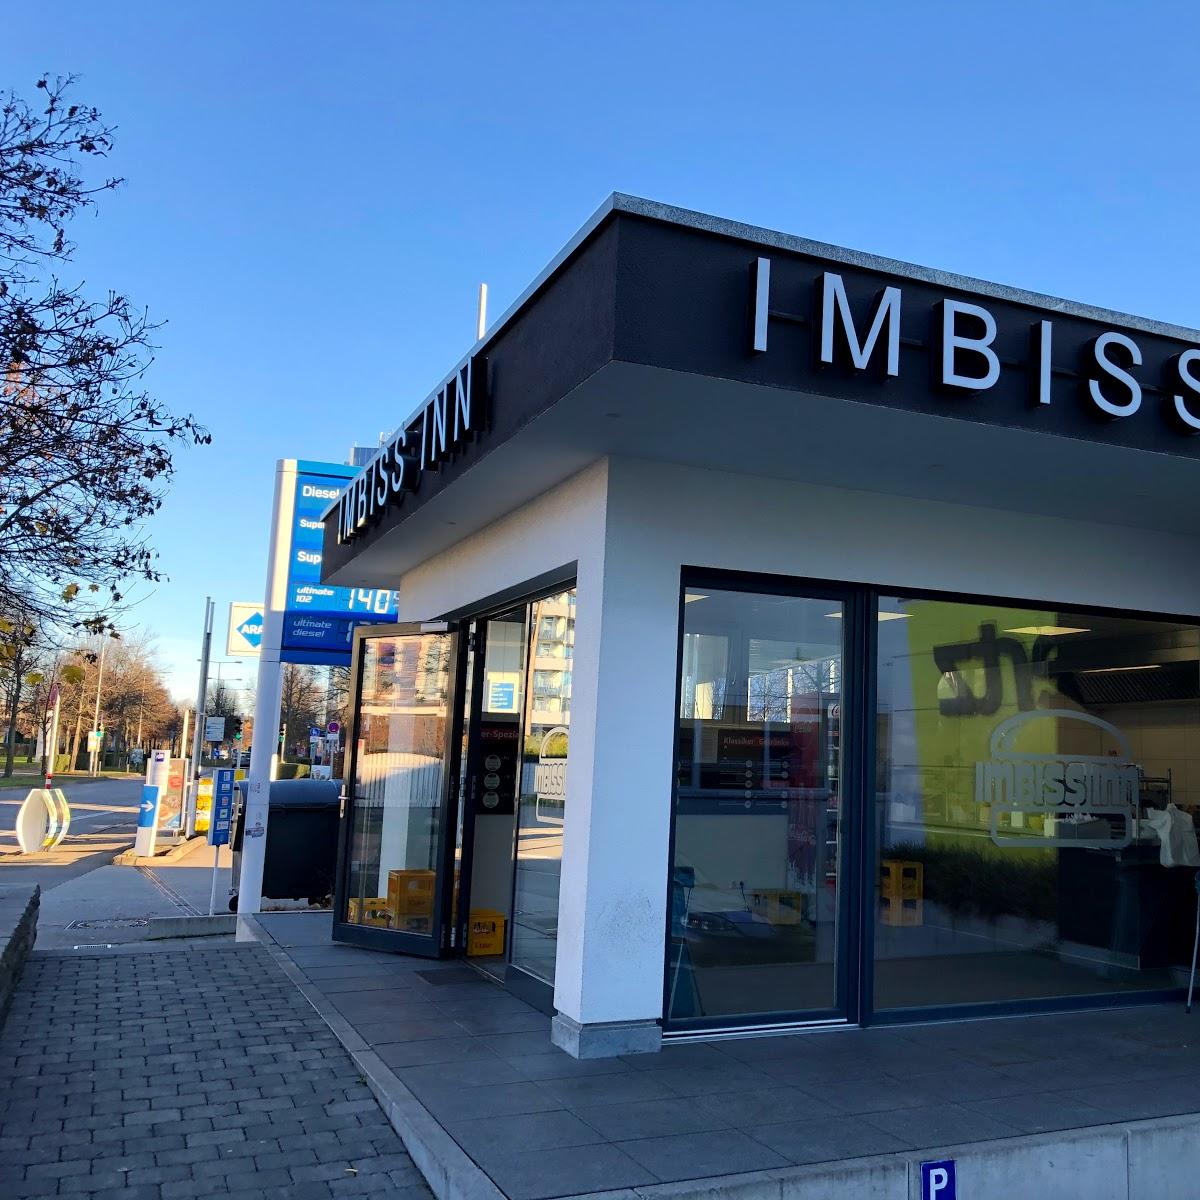 Restaurant "Imbiss Inn" in Stuttgart